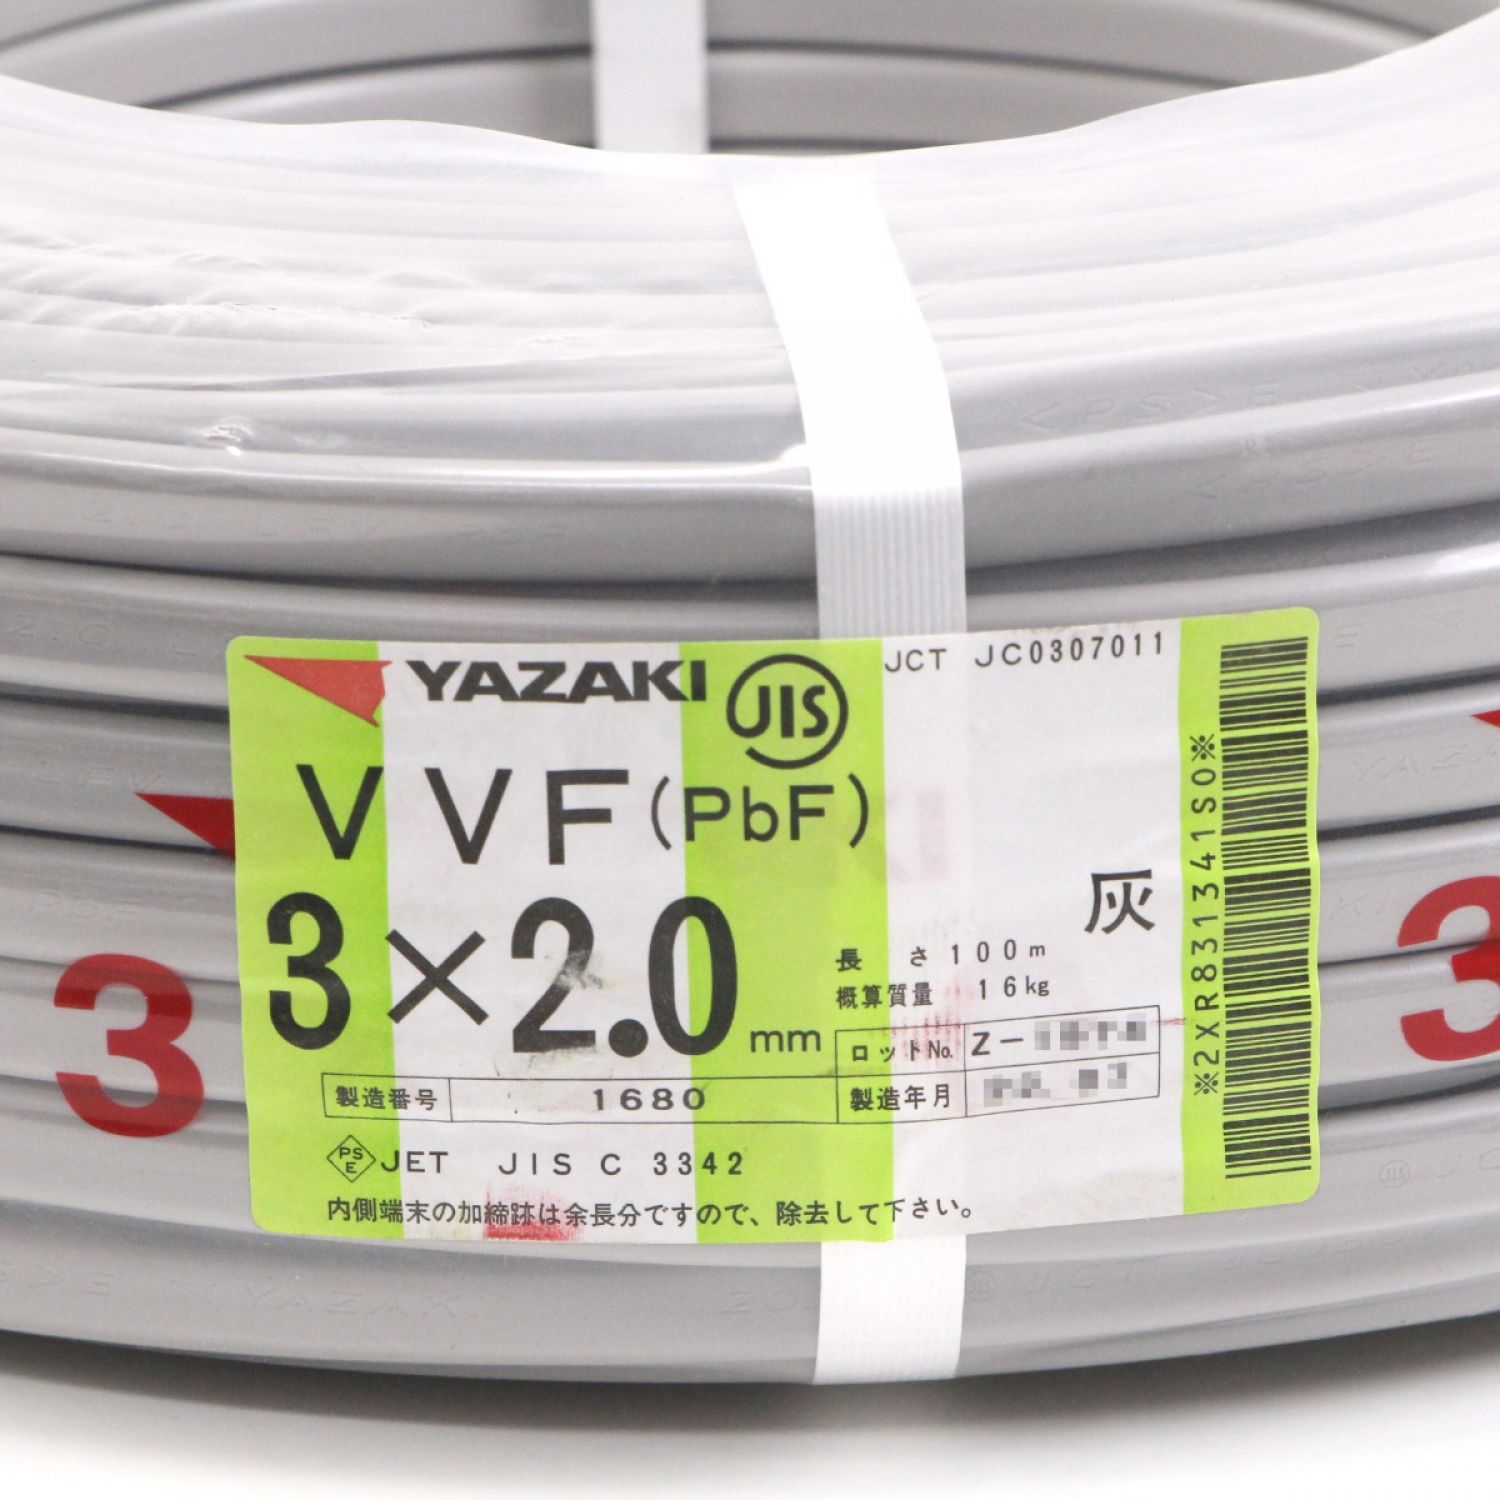 中古】 YAZAKI 矢崎エナジーシステム 電材 VVF(PbF)ケーブル 3×2.0mm